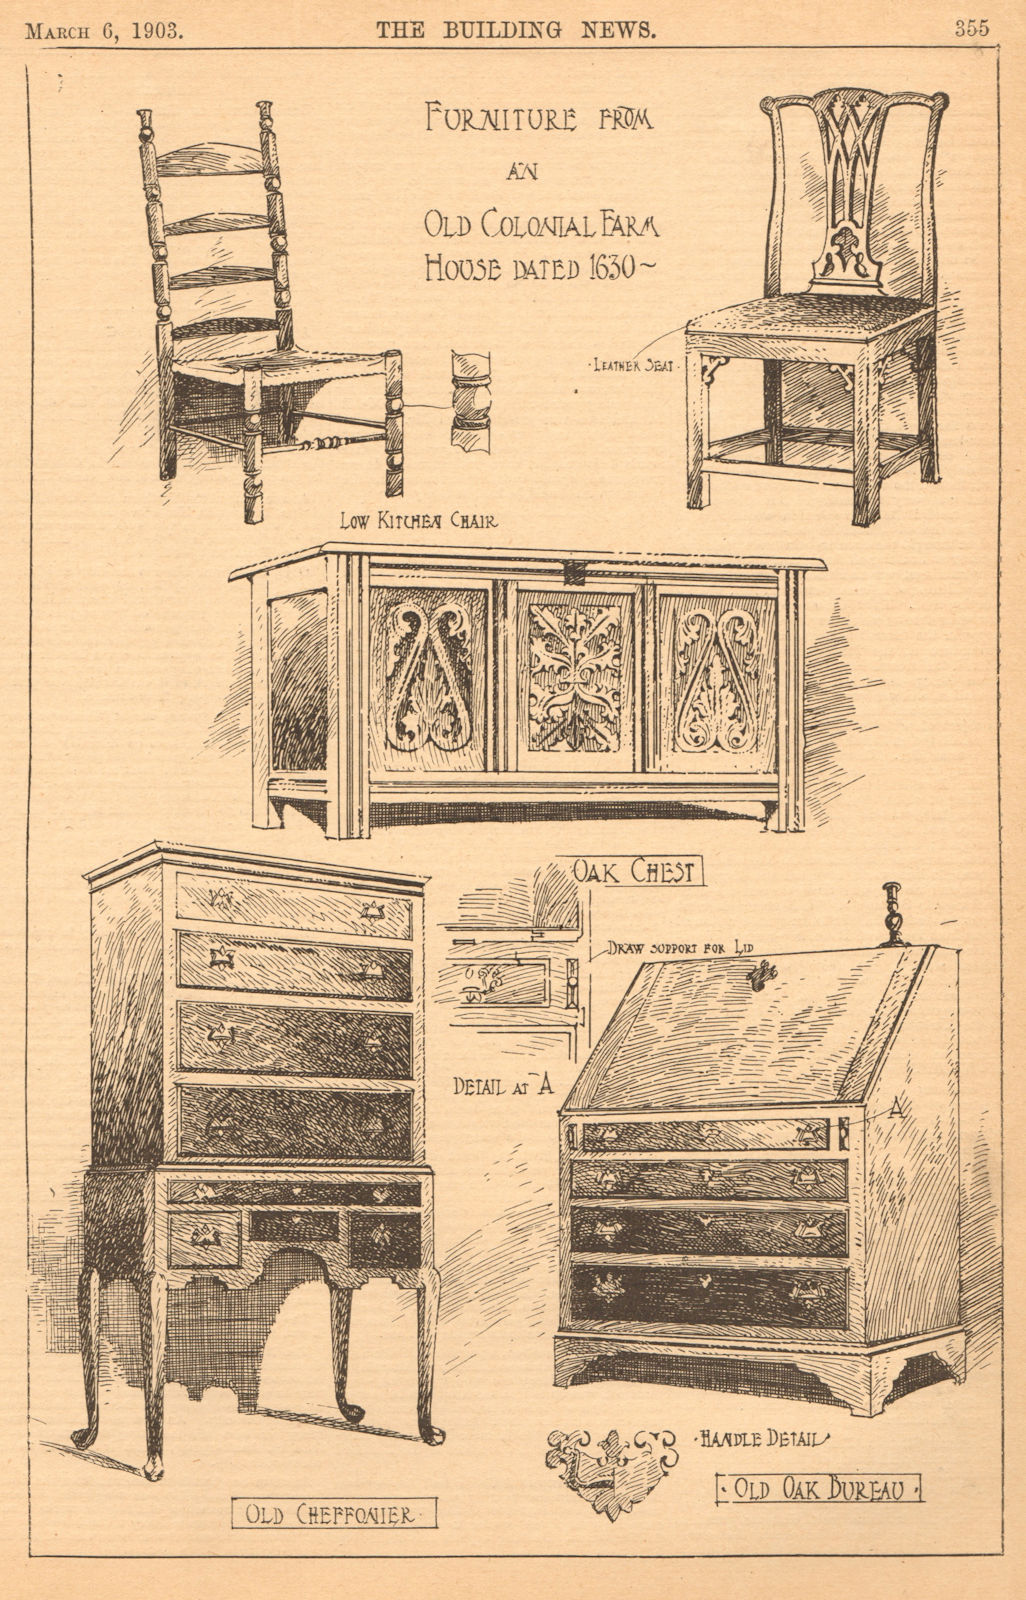 Colonial farm house furniture 1630. Kitchen chair chest cheffonier bureau 1903